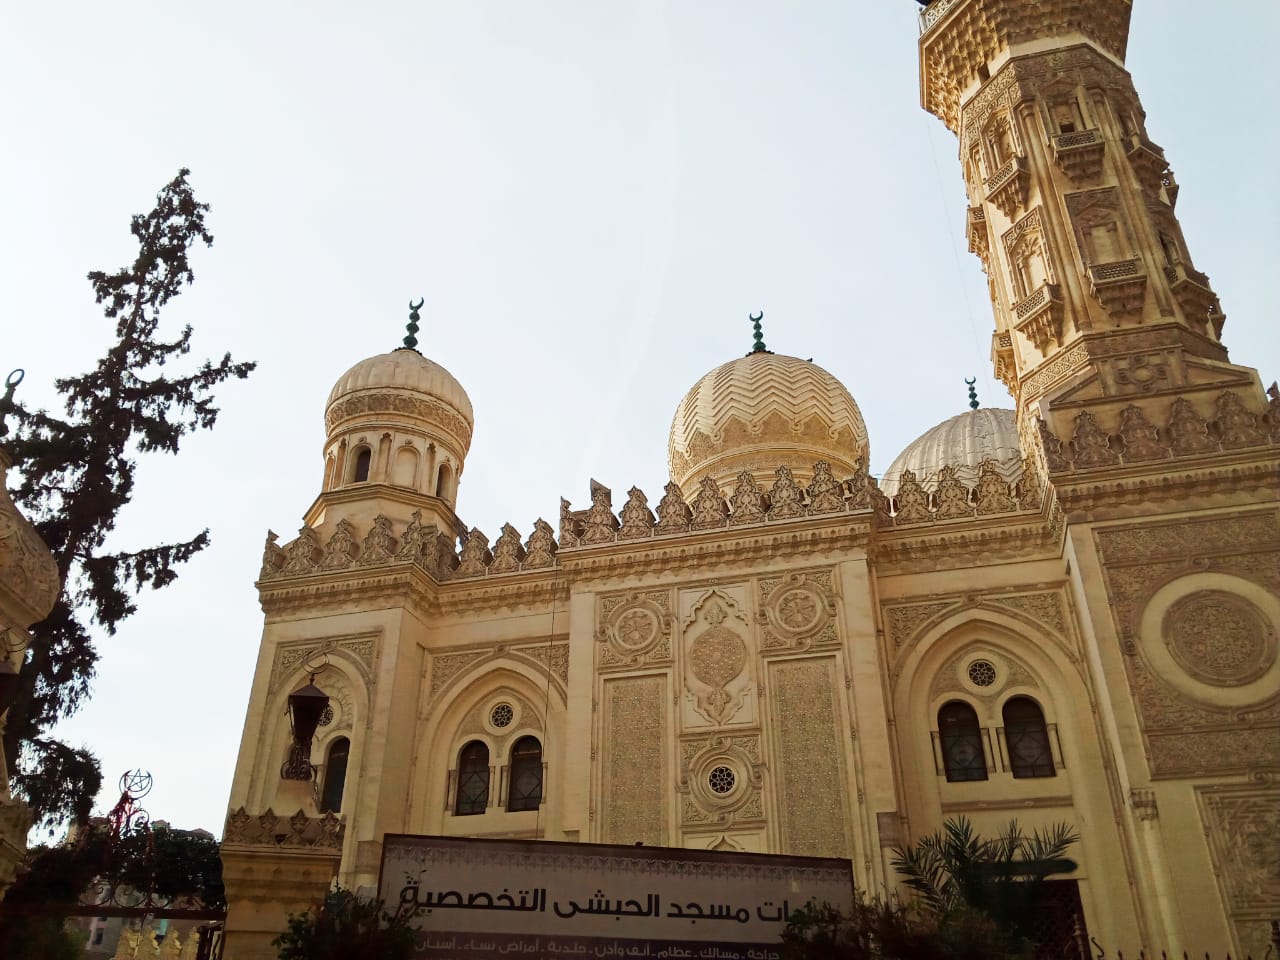 مسجد الحبشى بدمنهور أشهر المساجد الأثرية بالبحيرة  (3)